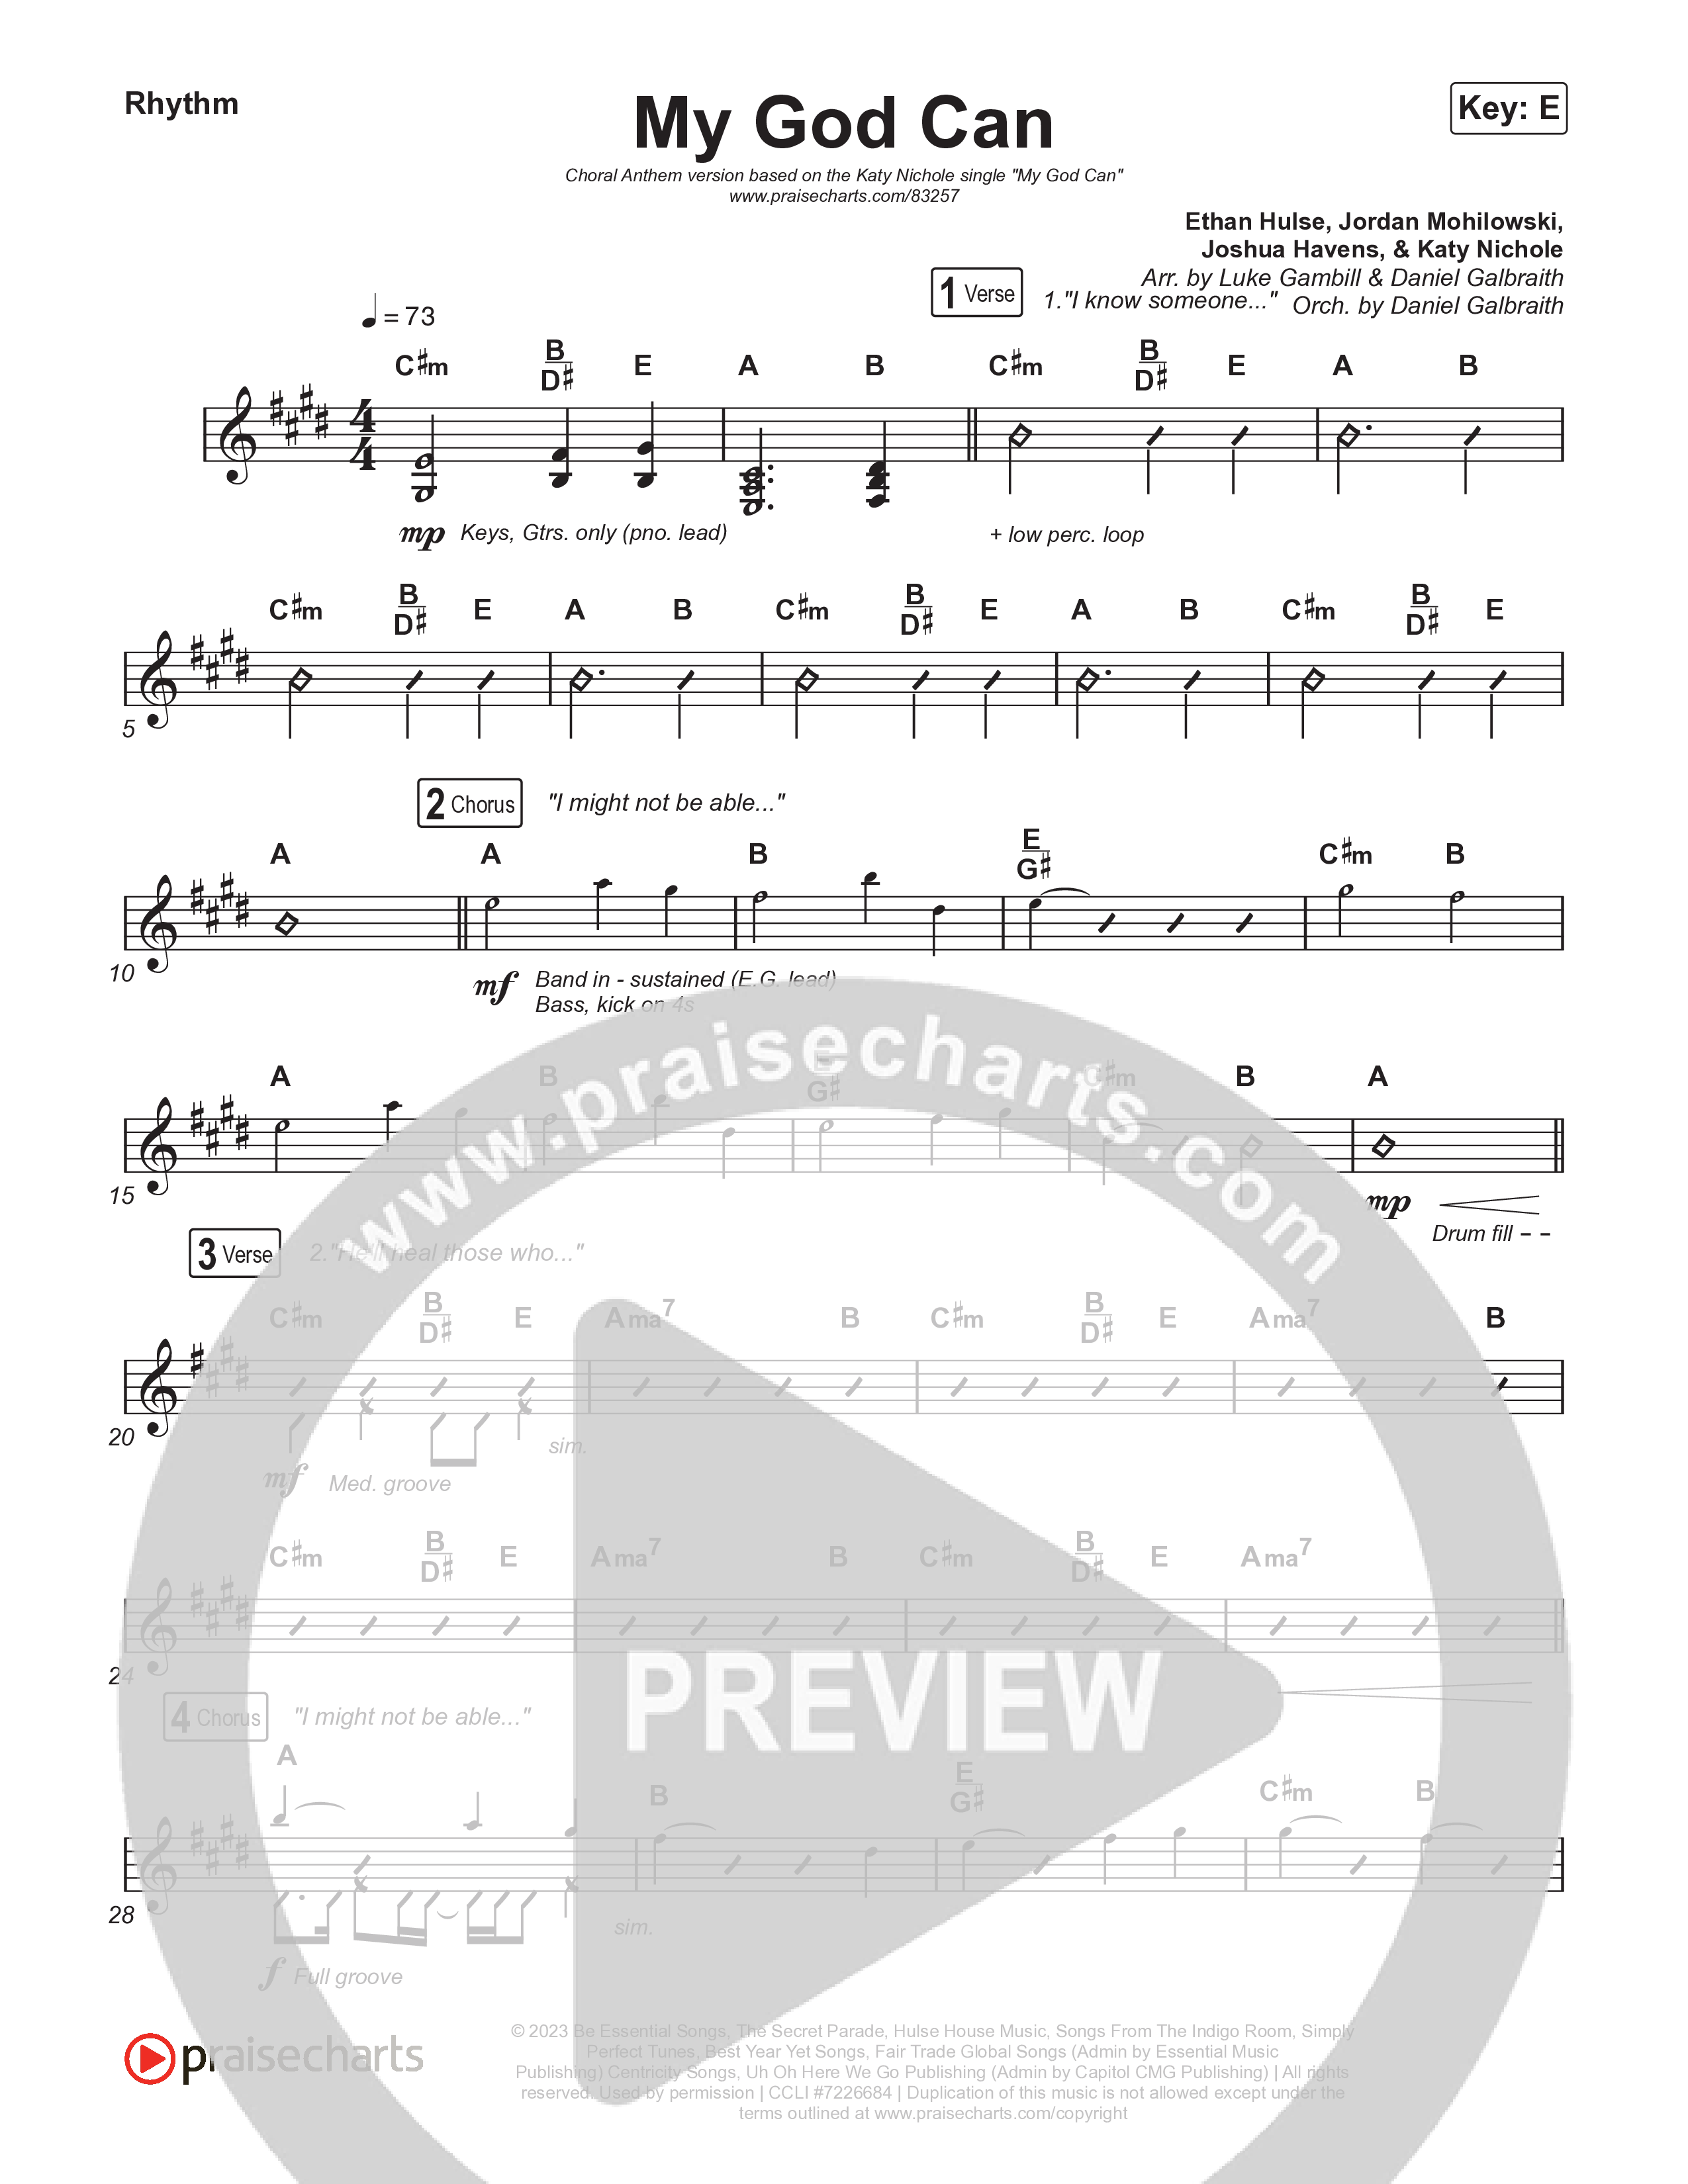 My God Can (Choral Anthem SATB) Rhythm Chart (Katy Nichole / Naomi Raine / Arr. Luke Gambill)